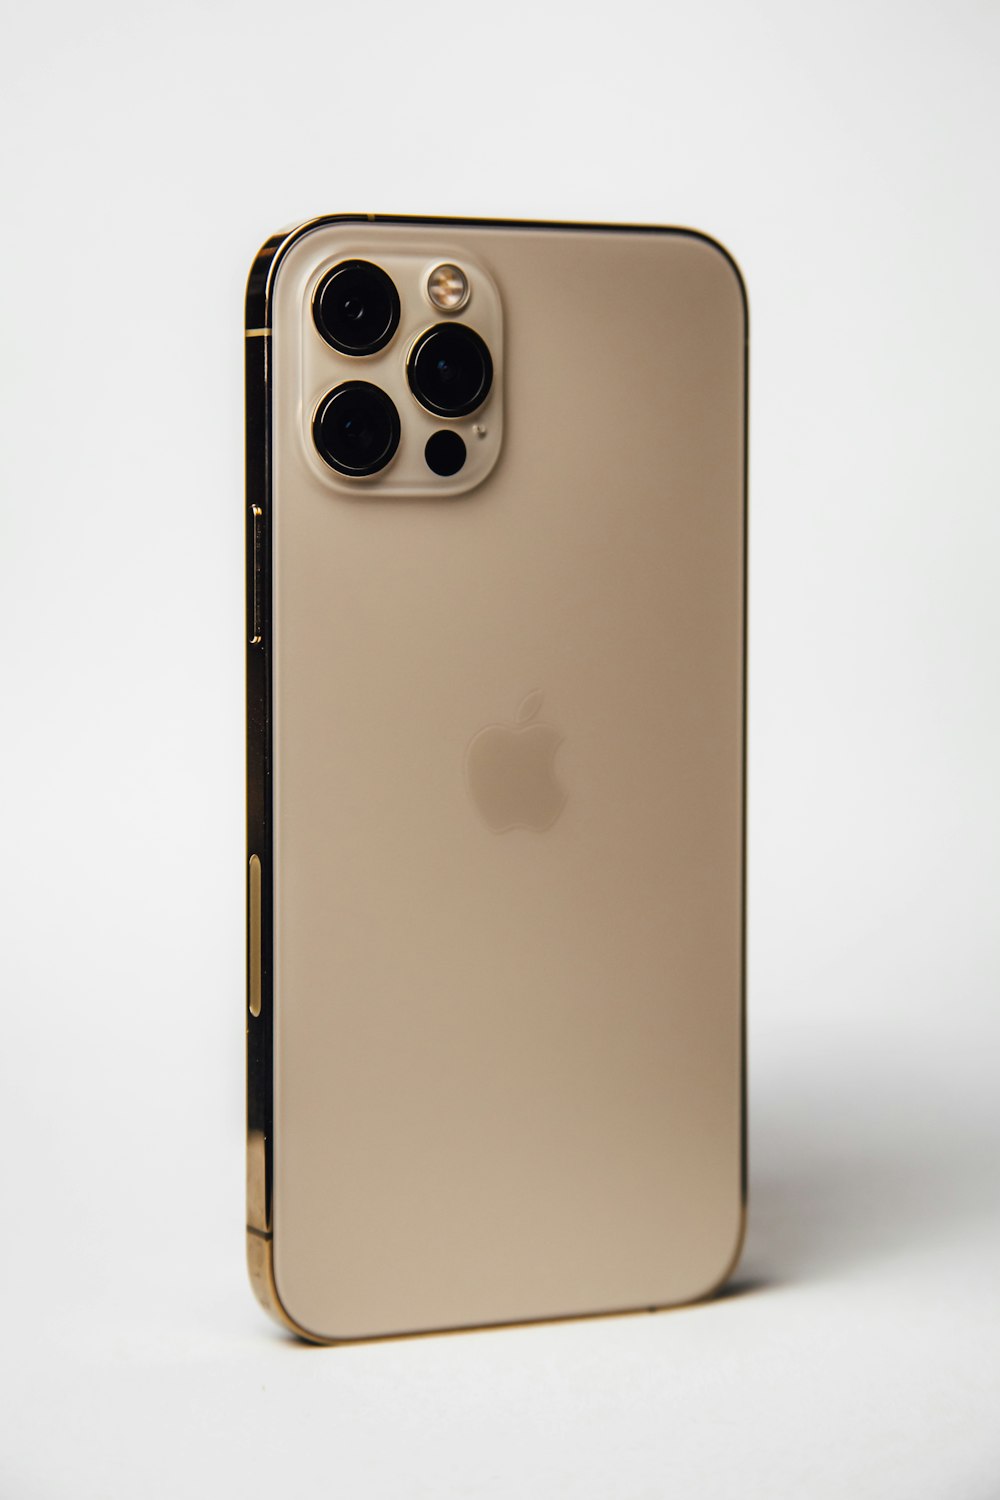 Die Rückseite einer goldenen iPhone-Hülle